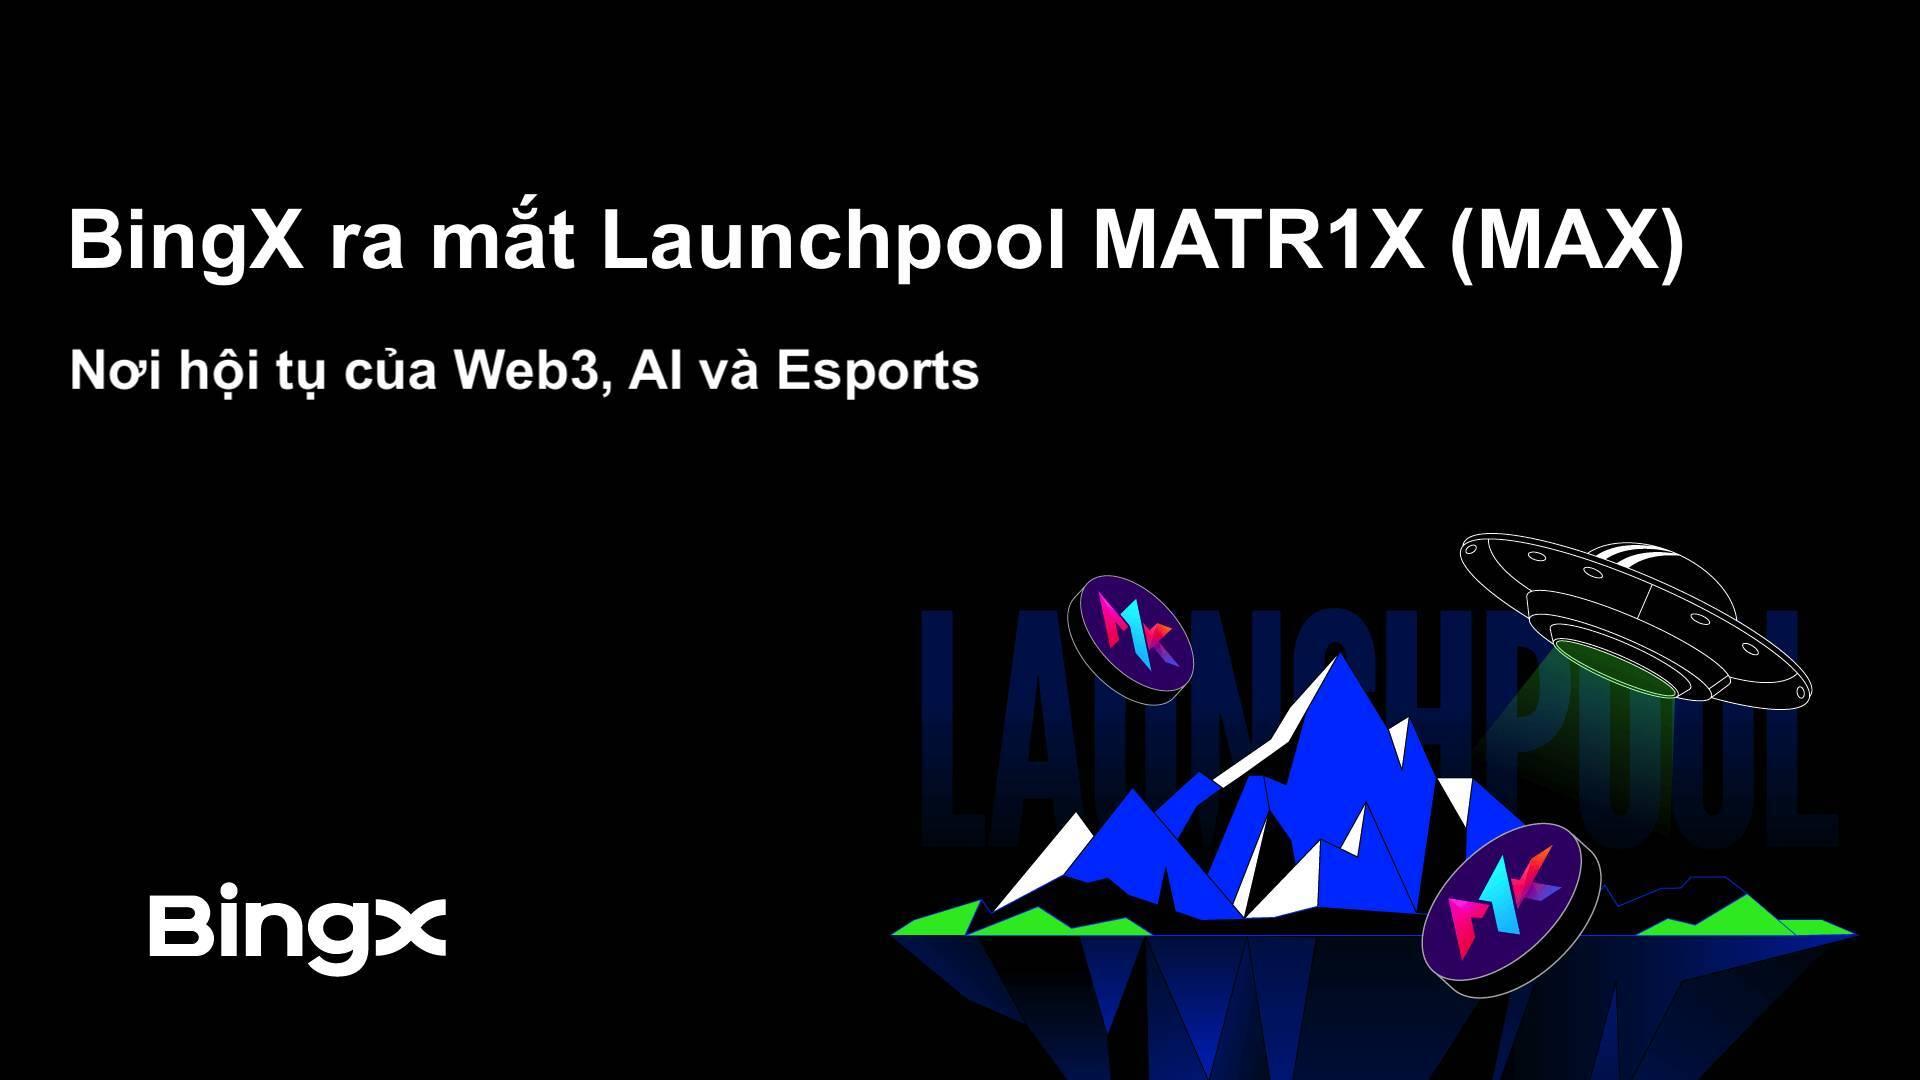 bingx-ra-mat-launchpool-matr1x-max-noi-hoi-tu-cua-web3-ai-va-esports